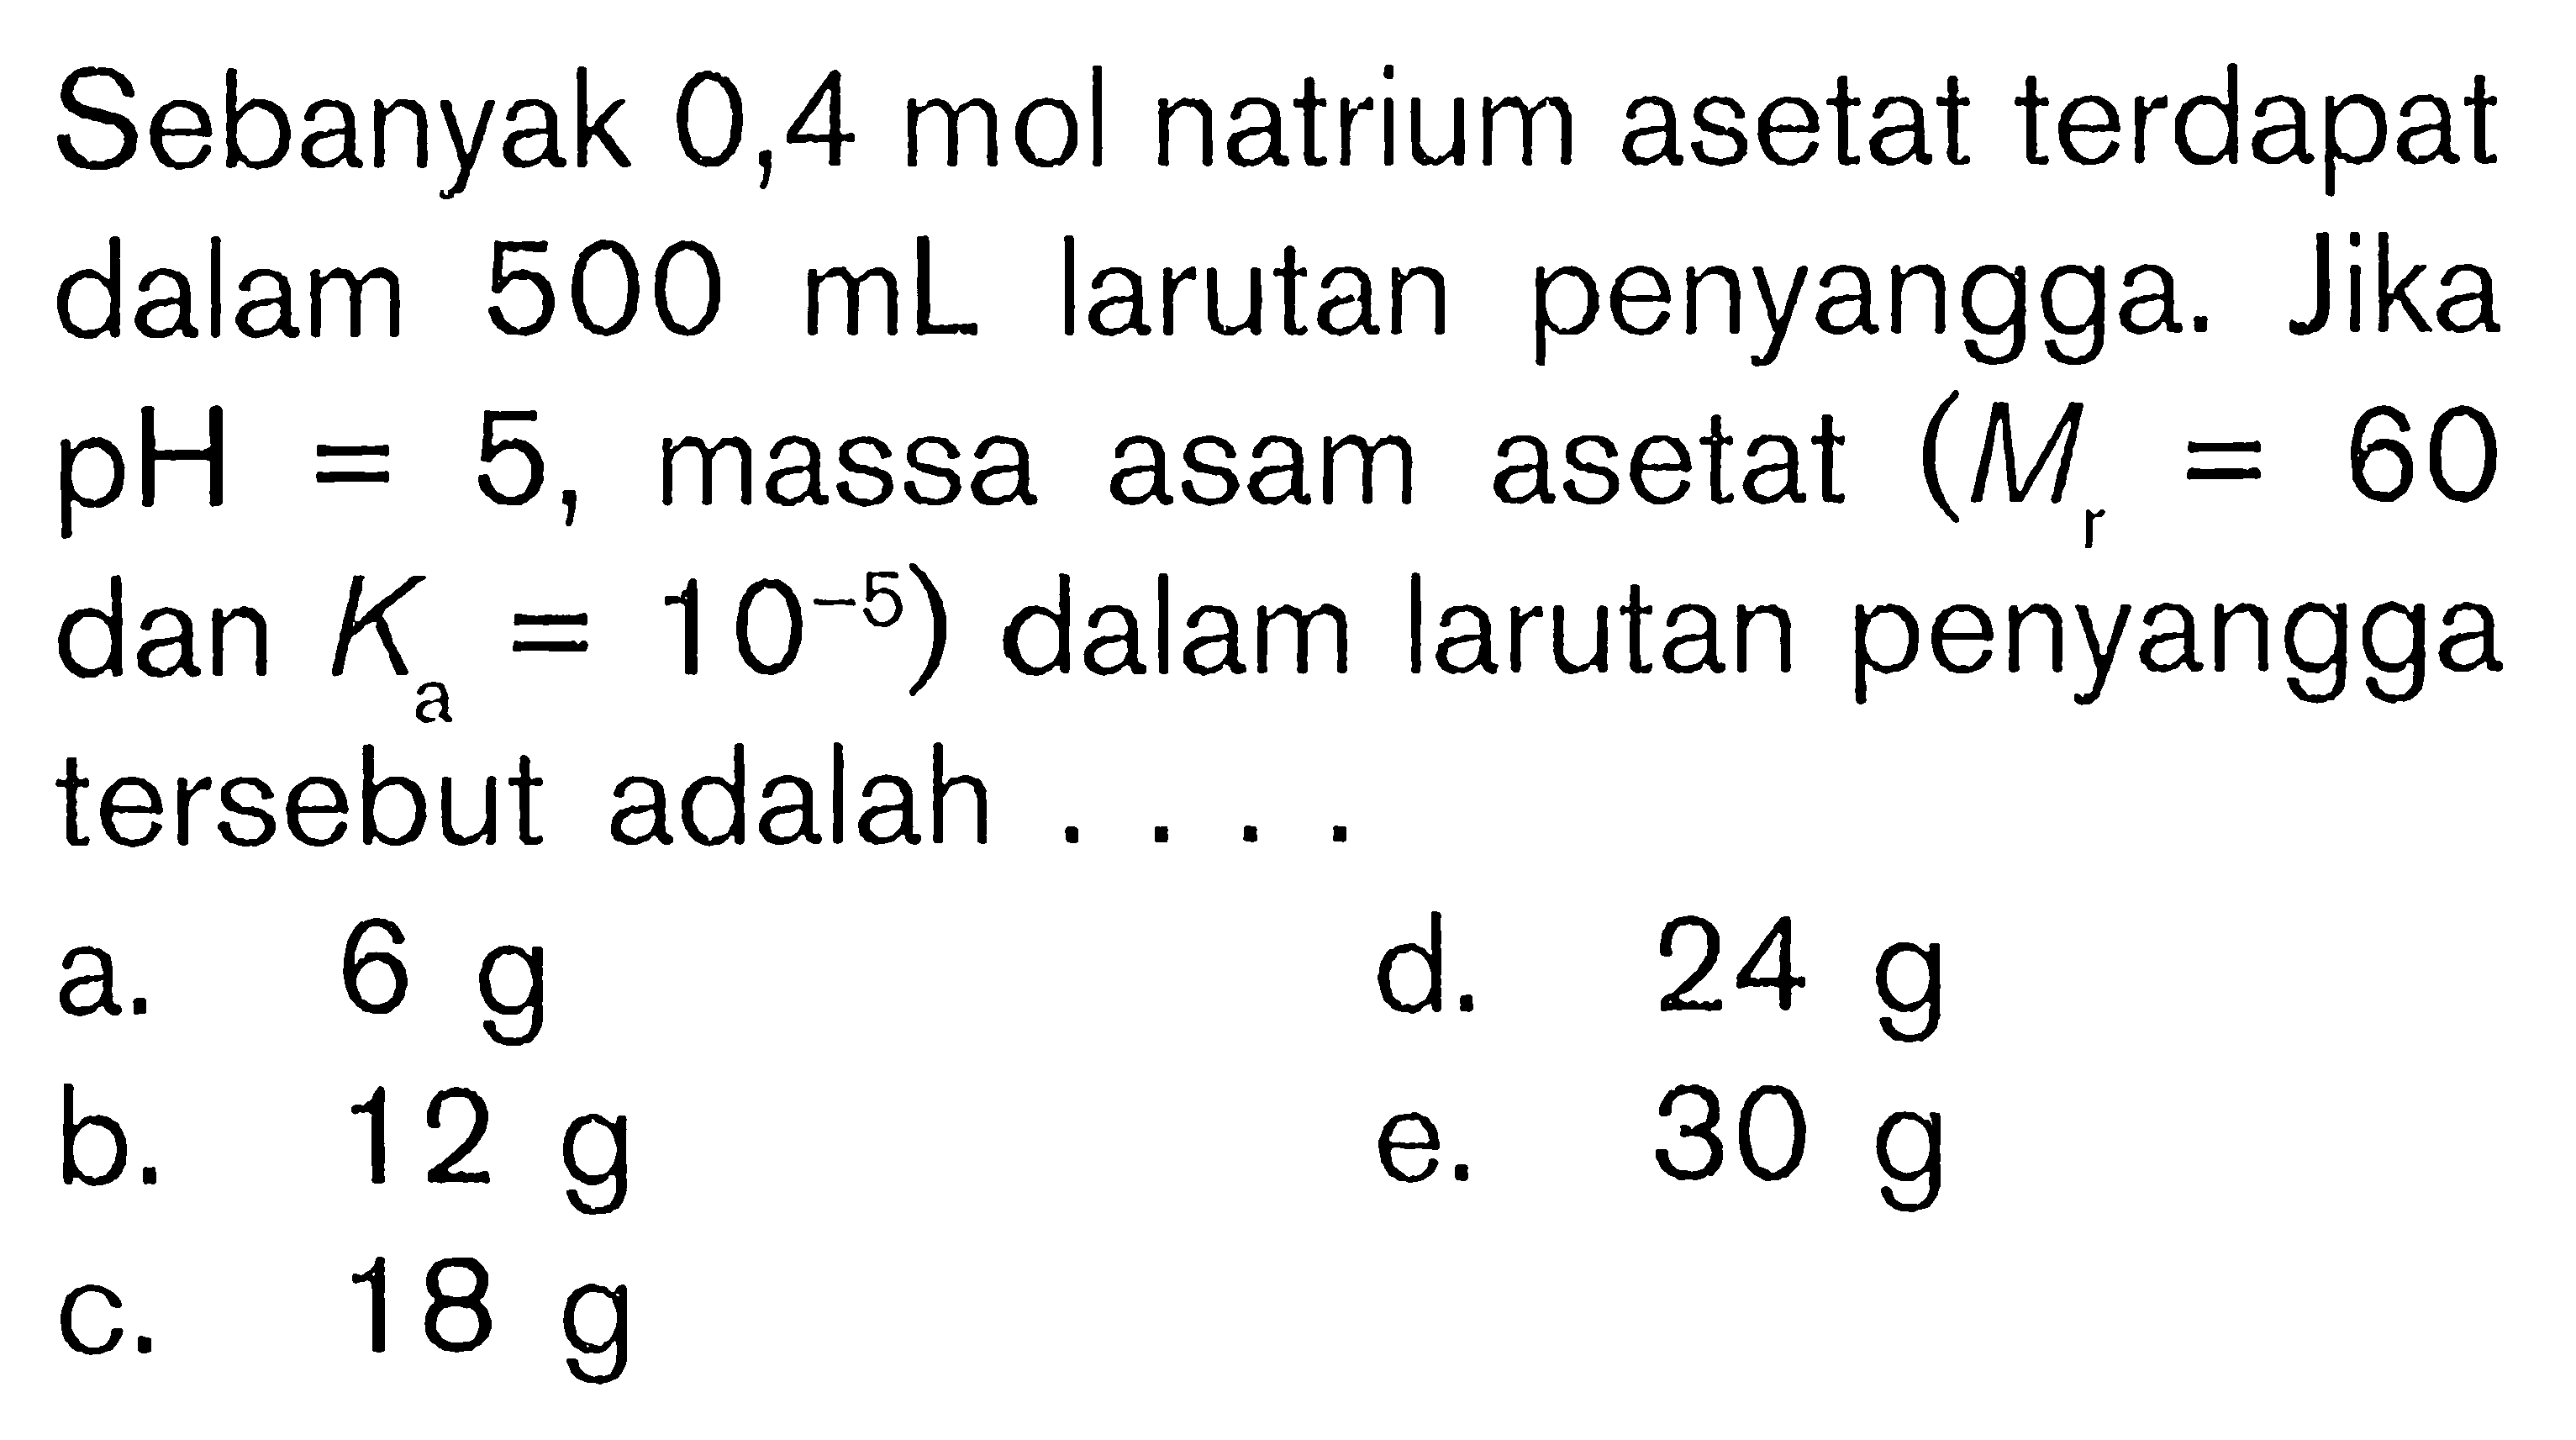 Sebanyak 0,4 mol natrium asetat terdapat dalam 500 mL larutan penyangga. Jika pH=5, massa asam asetat (Mr=60. dan Ka=10^-5) dalam larutan penyangga tersebut adalah ....